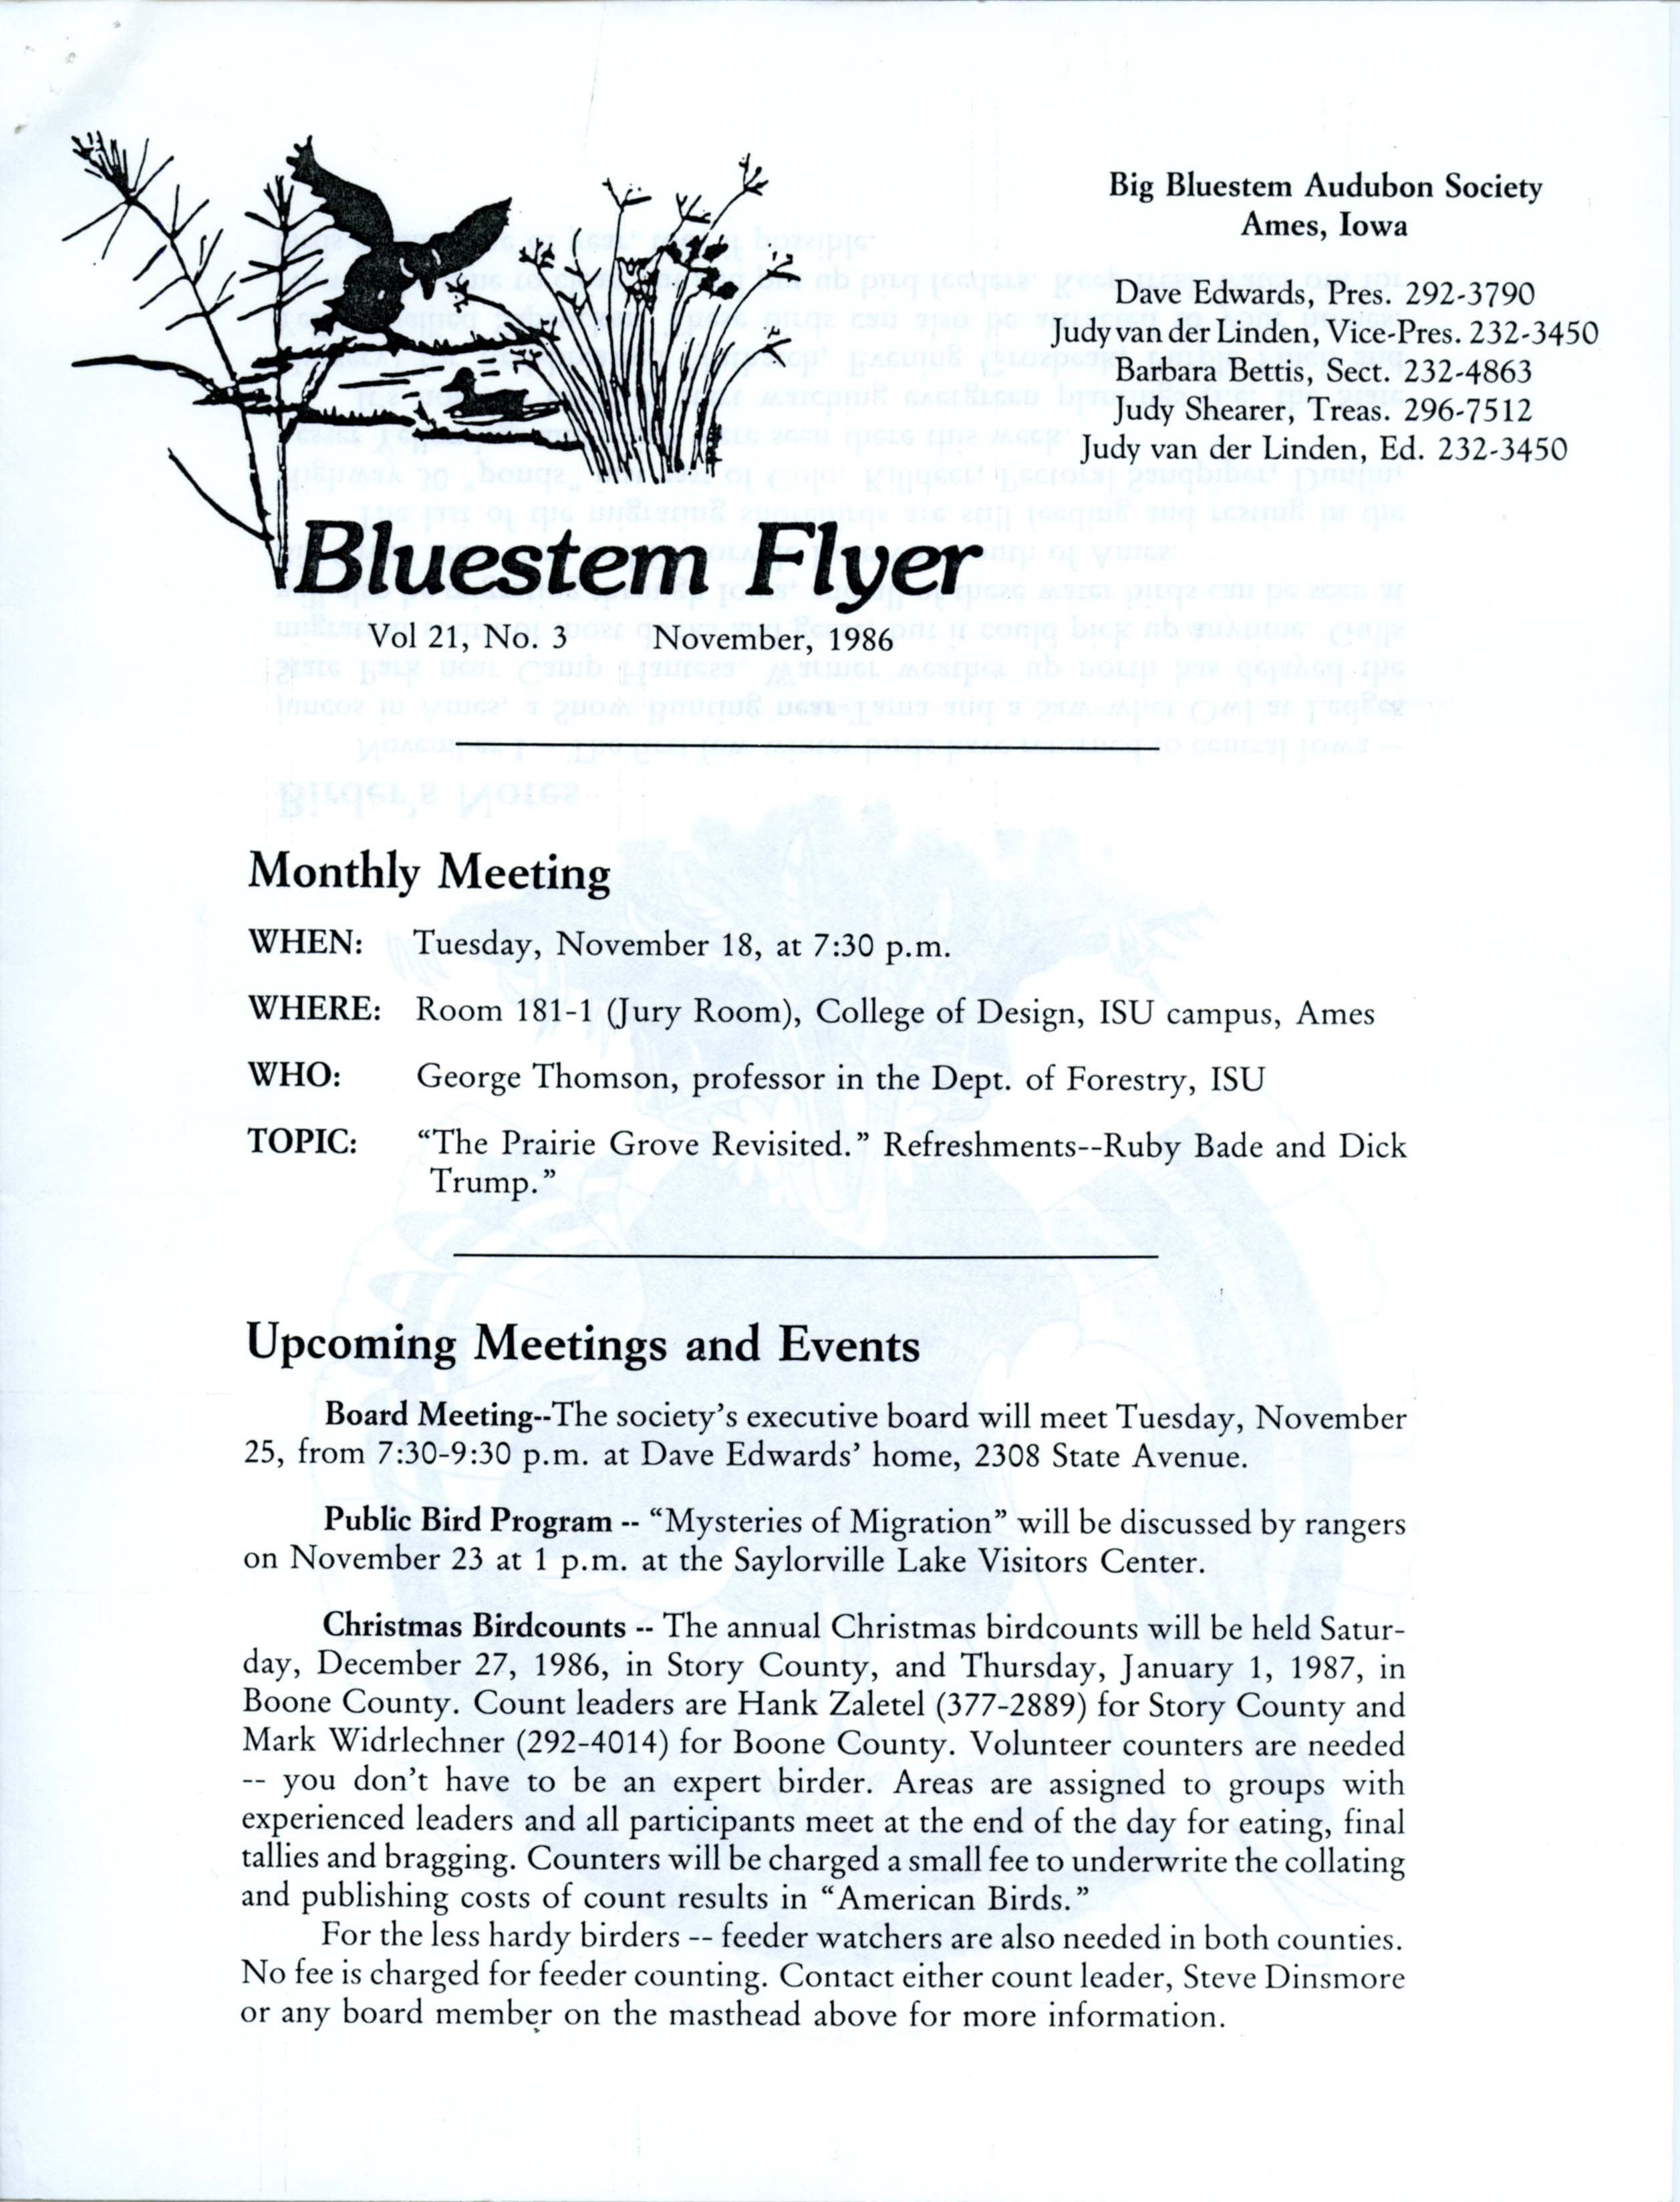 Bluestem Flyer, Volume 21, Number 3, November 1986 